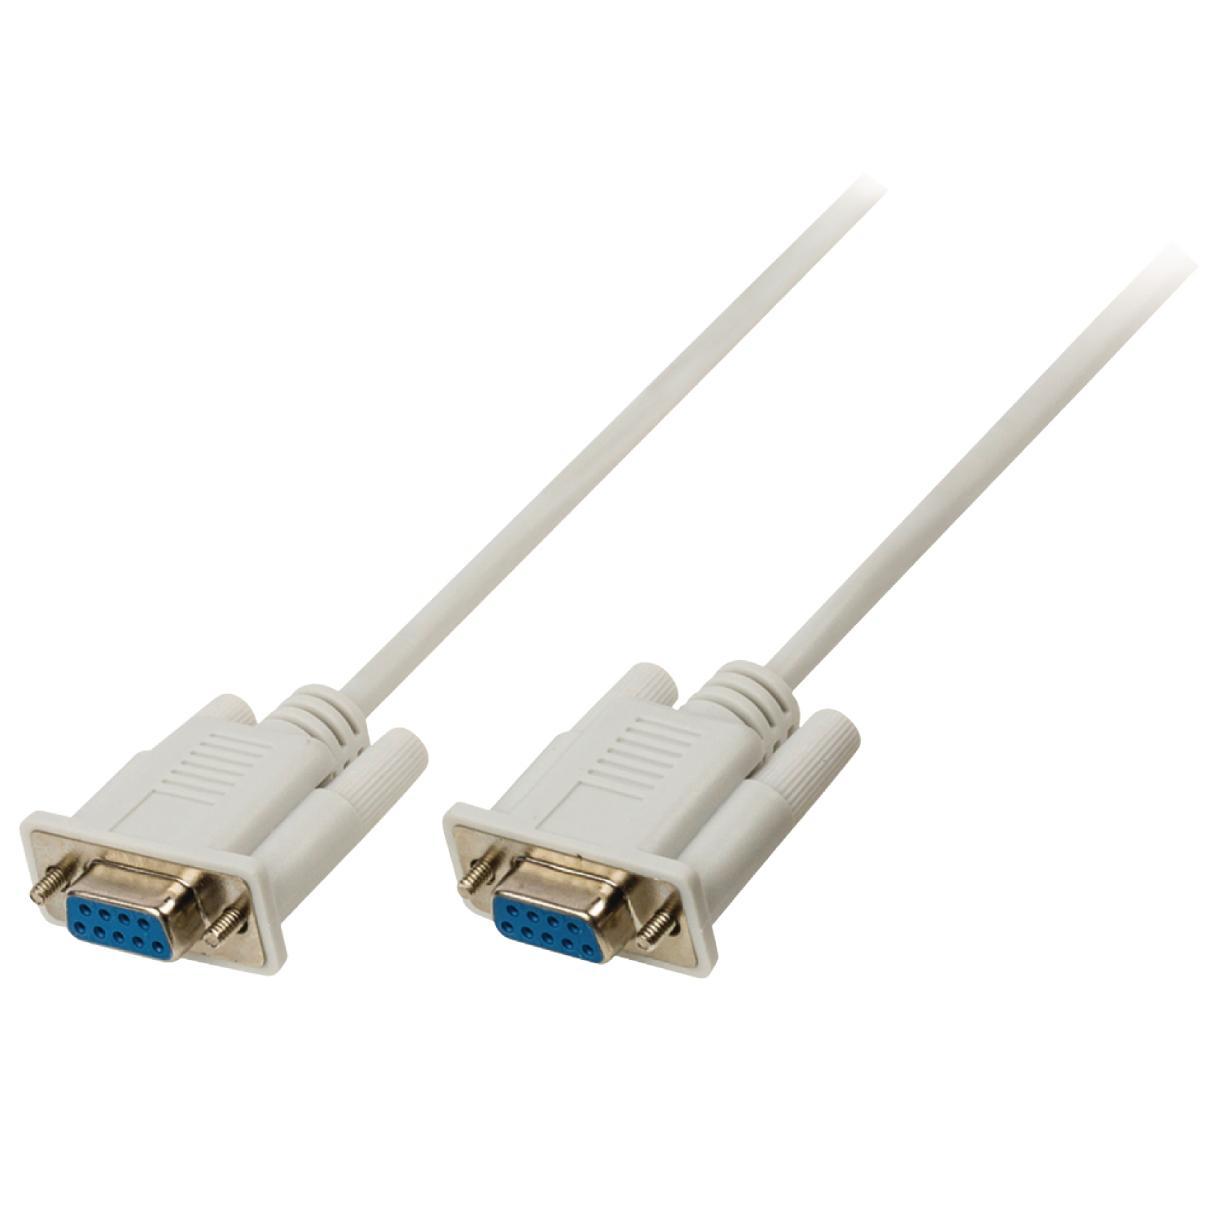 Image of RS232 kabel - 2 meter - Valueline